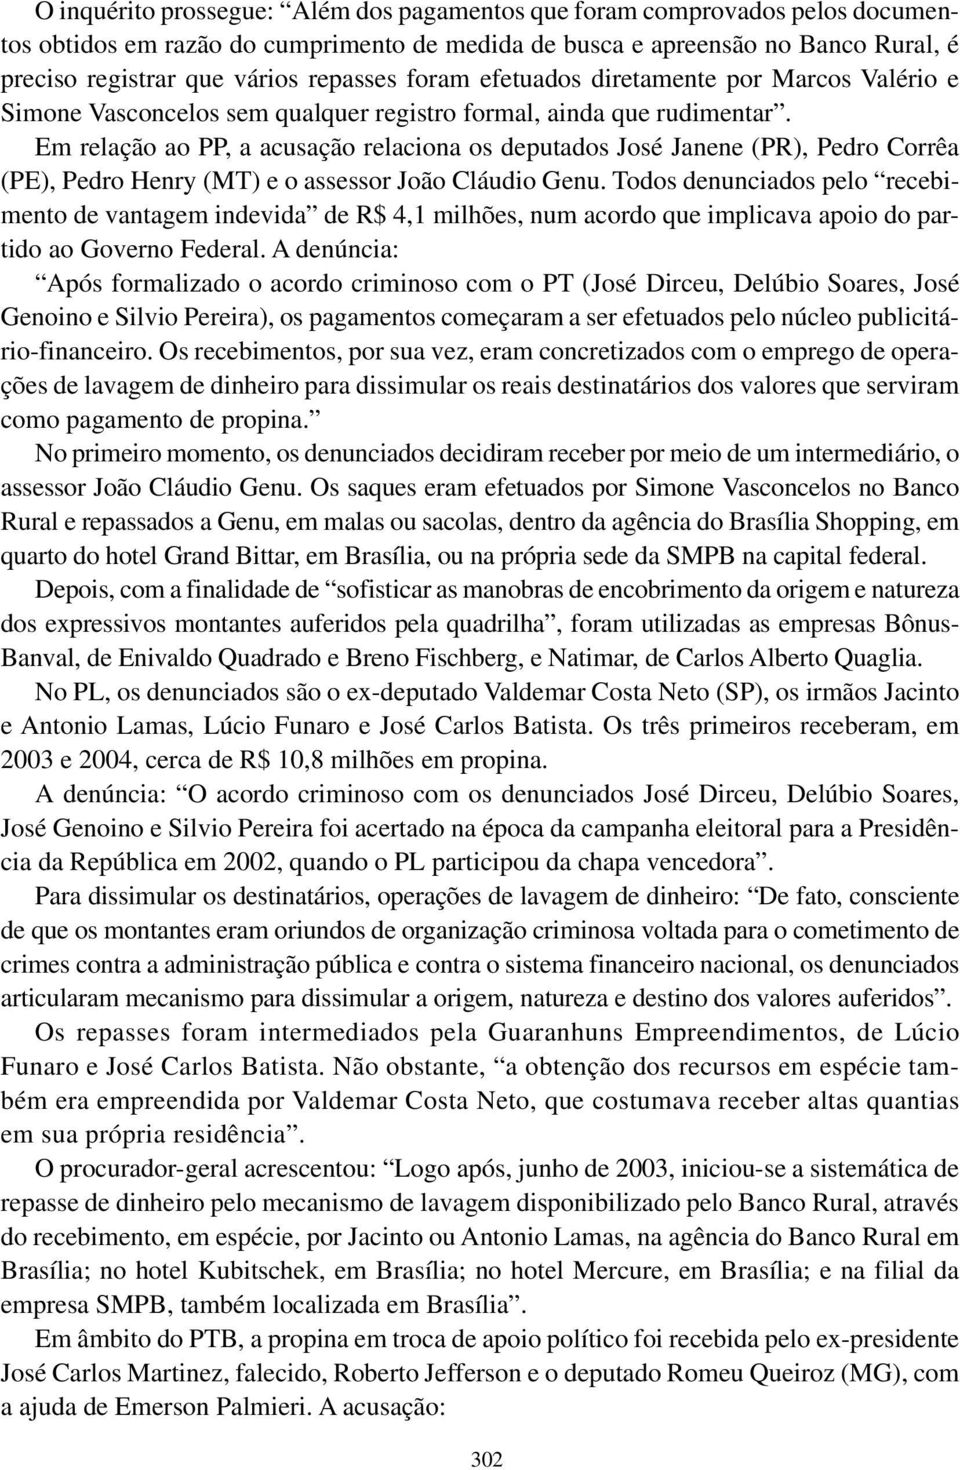 Em relação ao PP, a acusação relaciona os deputados José Janene (PR), Pedro Corrêa (PE), Pedro Henry (MT) e o assessor João Cláudio Genu.